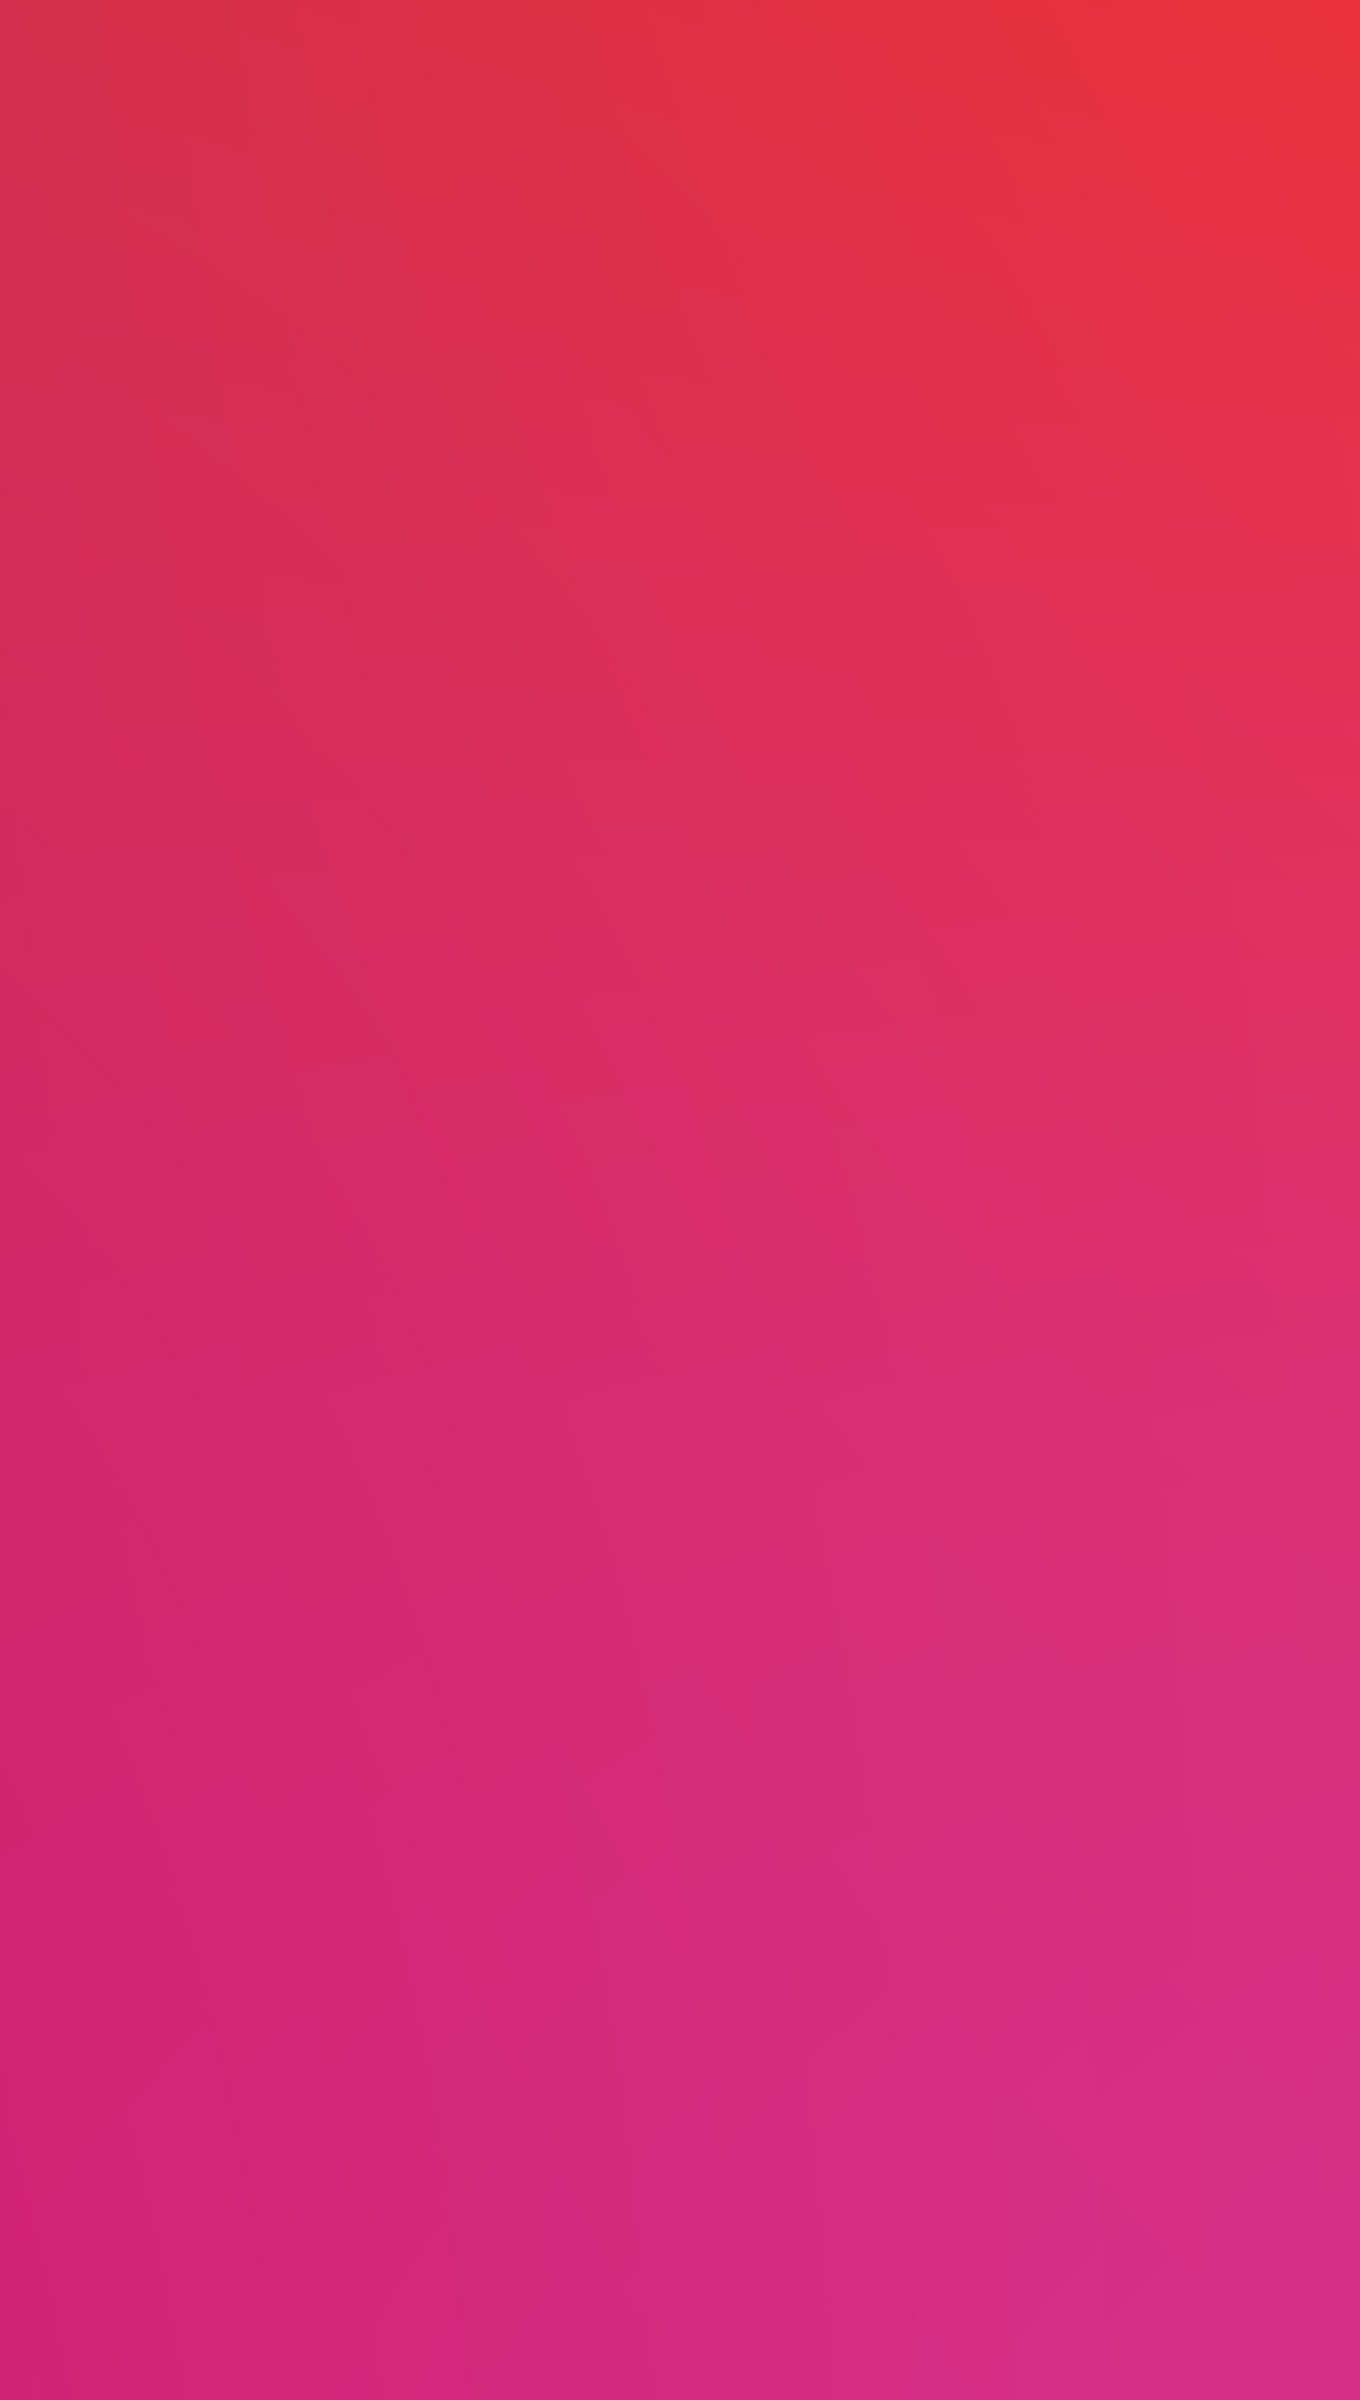 Red to Pink blur gradient Wallpaper 4k Ultra HD ID:7946